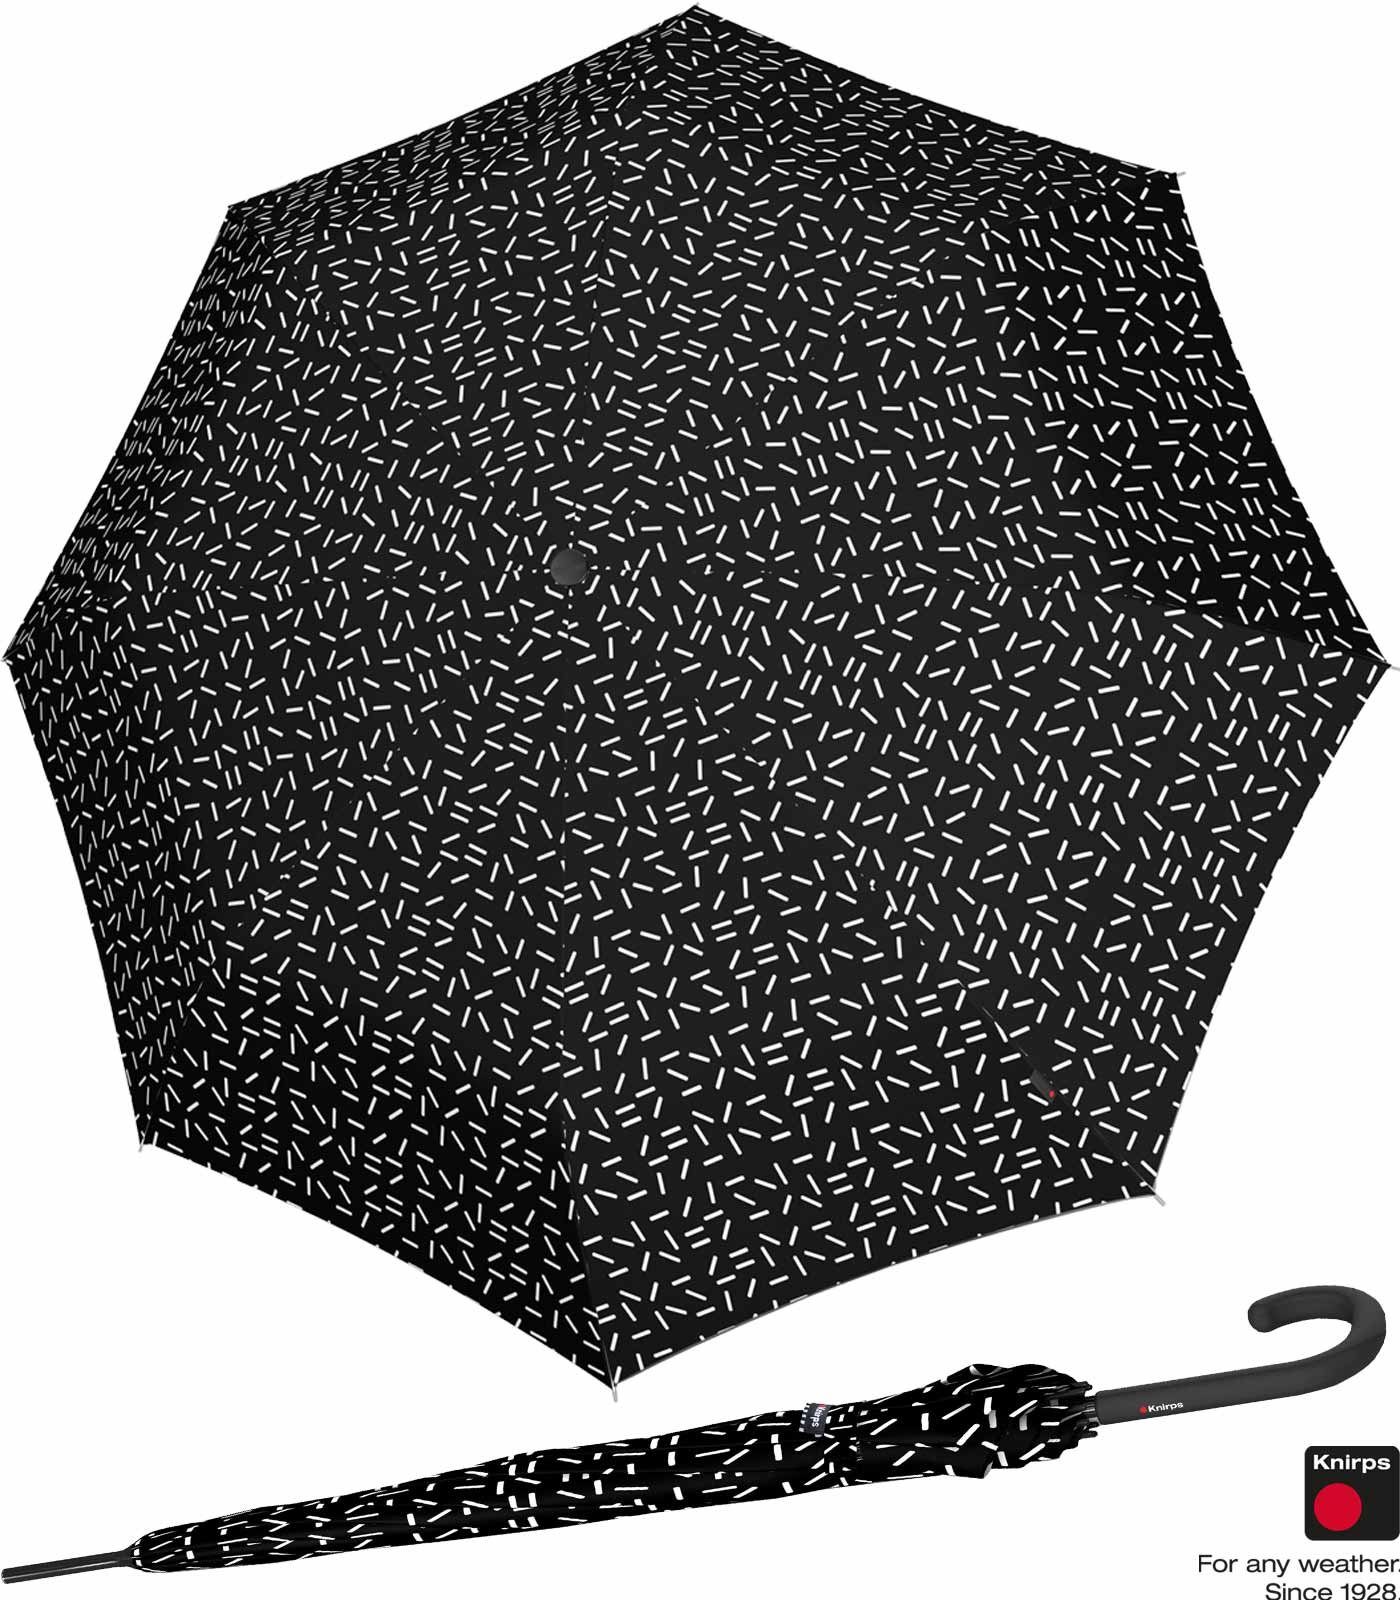 Knirps® Langregenschirm Damen A.760 Auf-Automatik - 2Dance, groß und stabil schwarz | Stockschirme